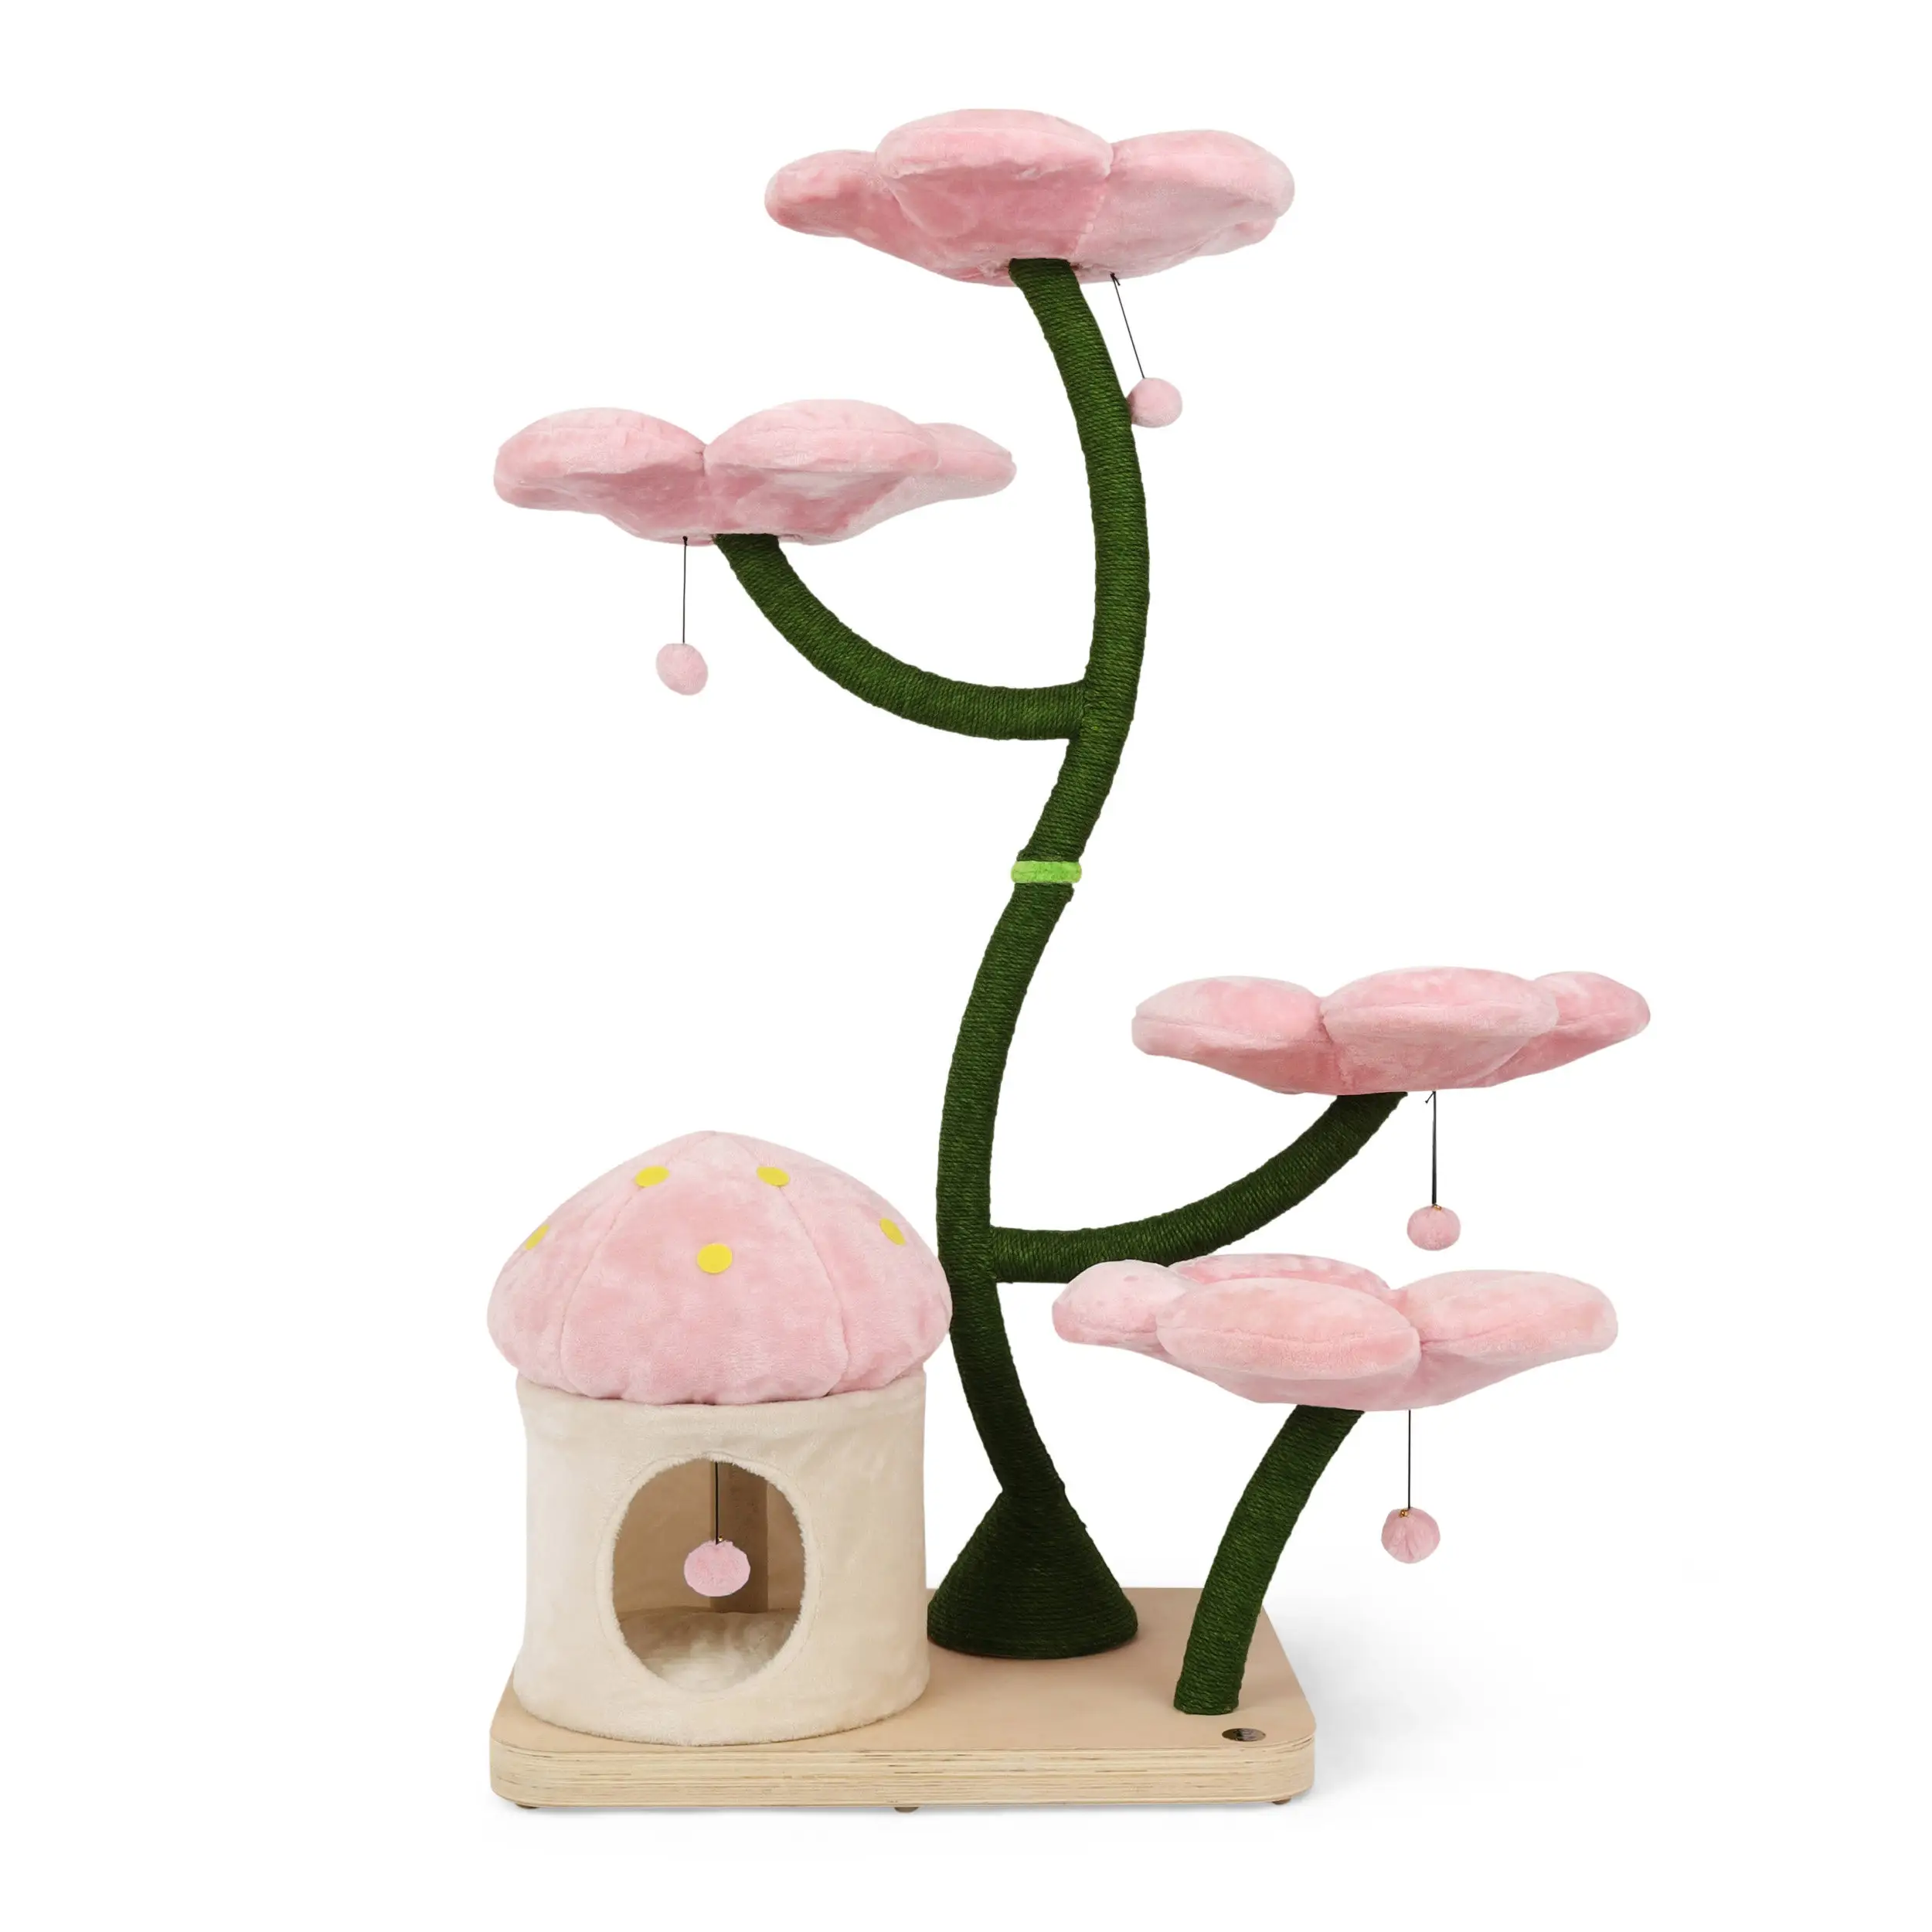 Casa per gatti mobili in legno casa di design torre in legno floreale torre albero per gatti floreale torre per gatti in legno